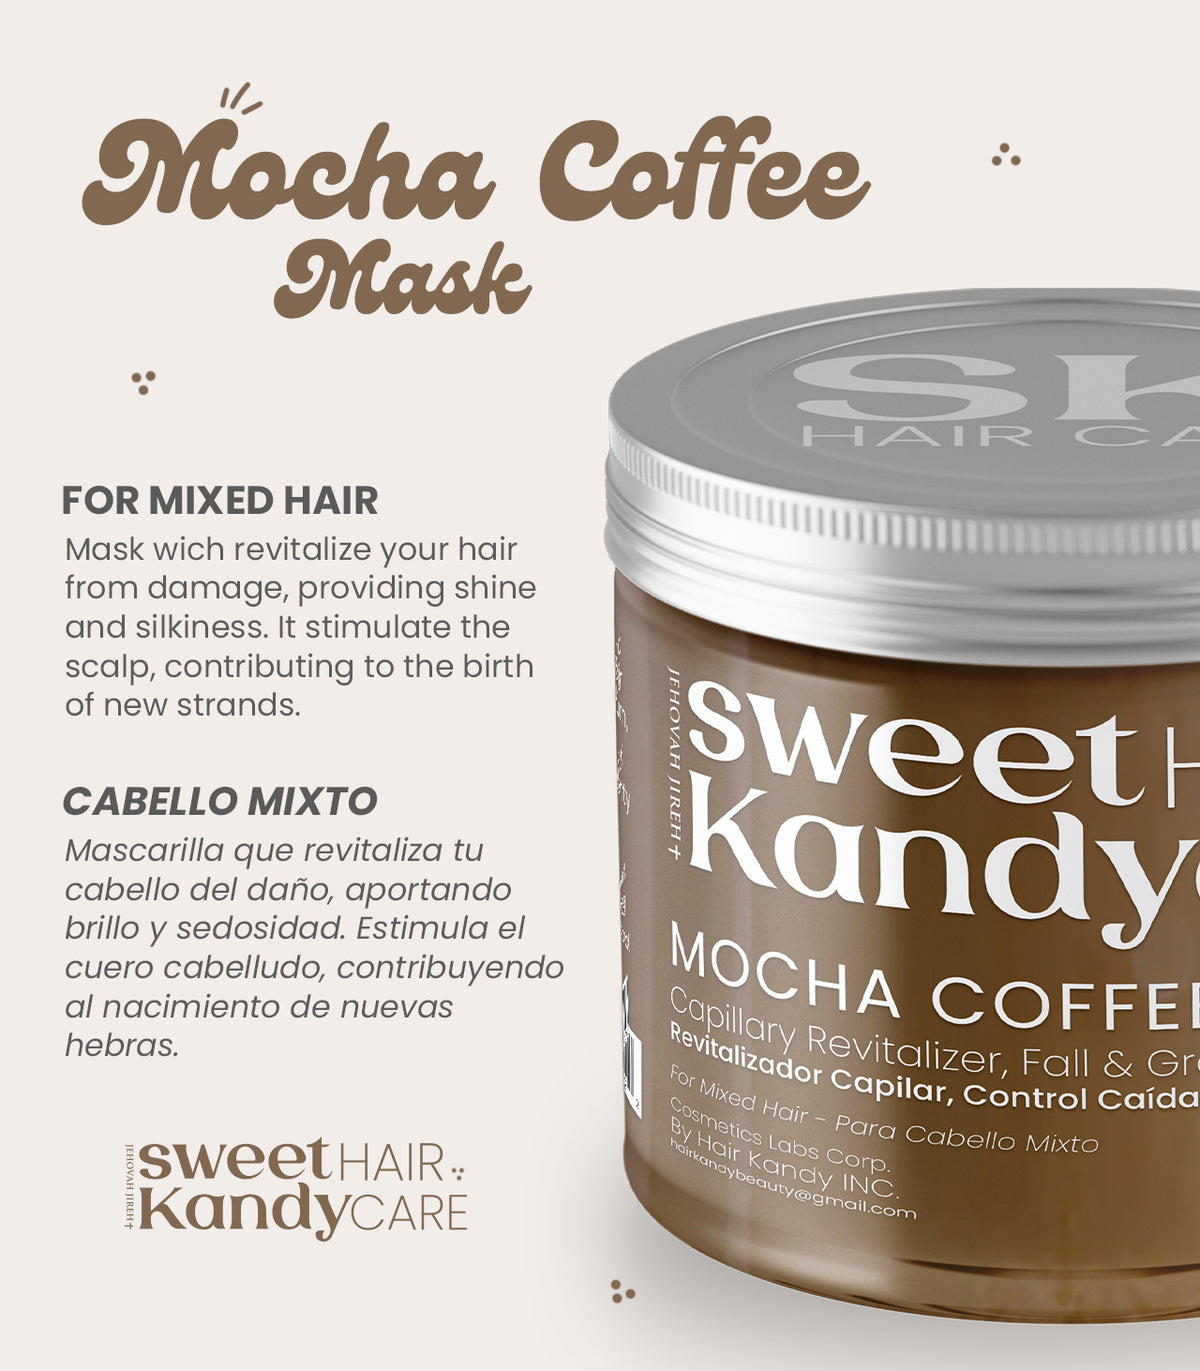 Mascarilla Mocha Coffee